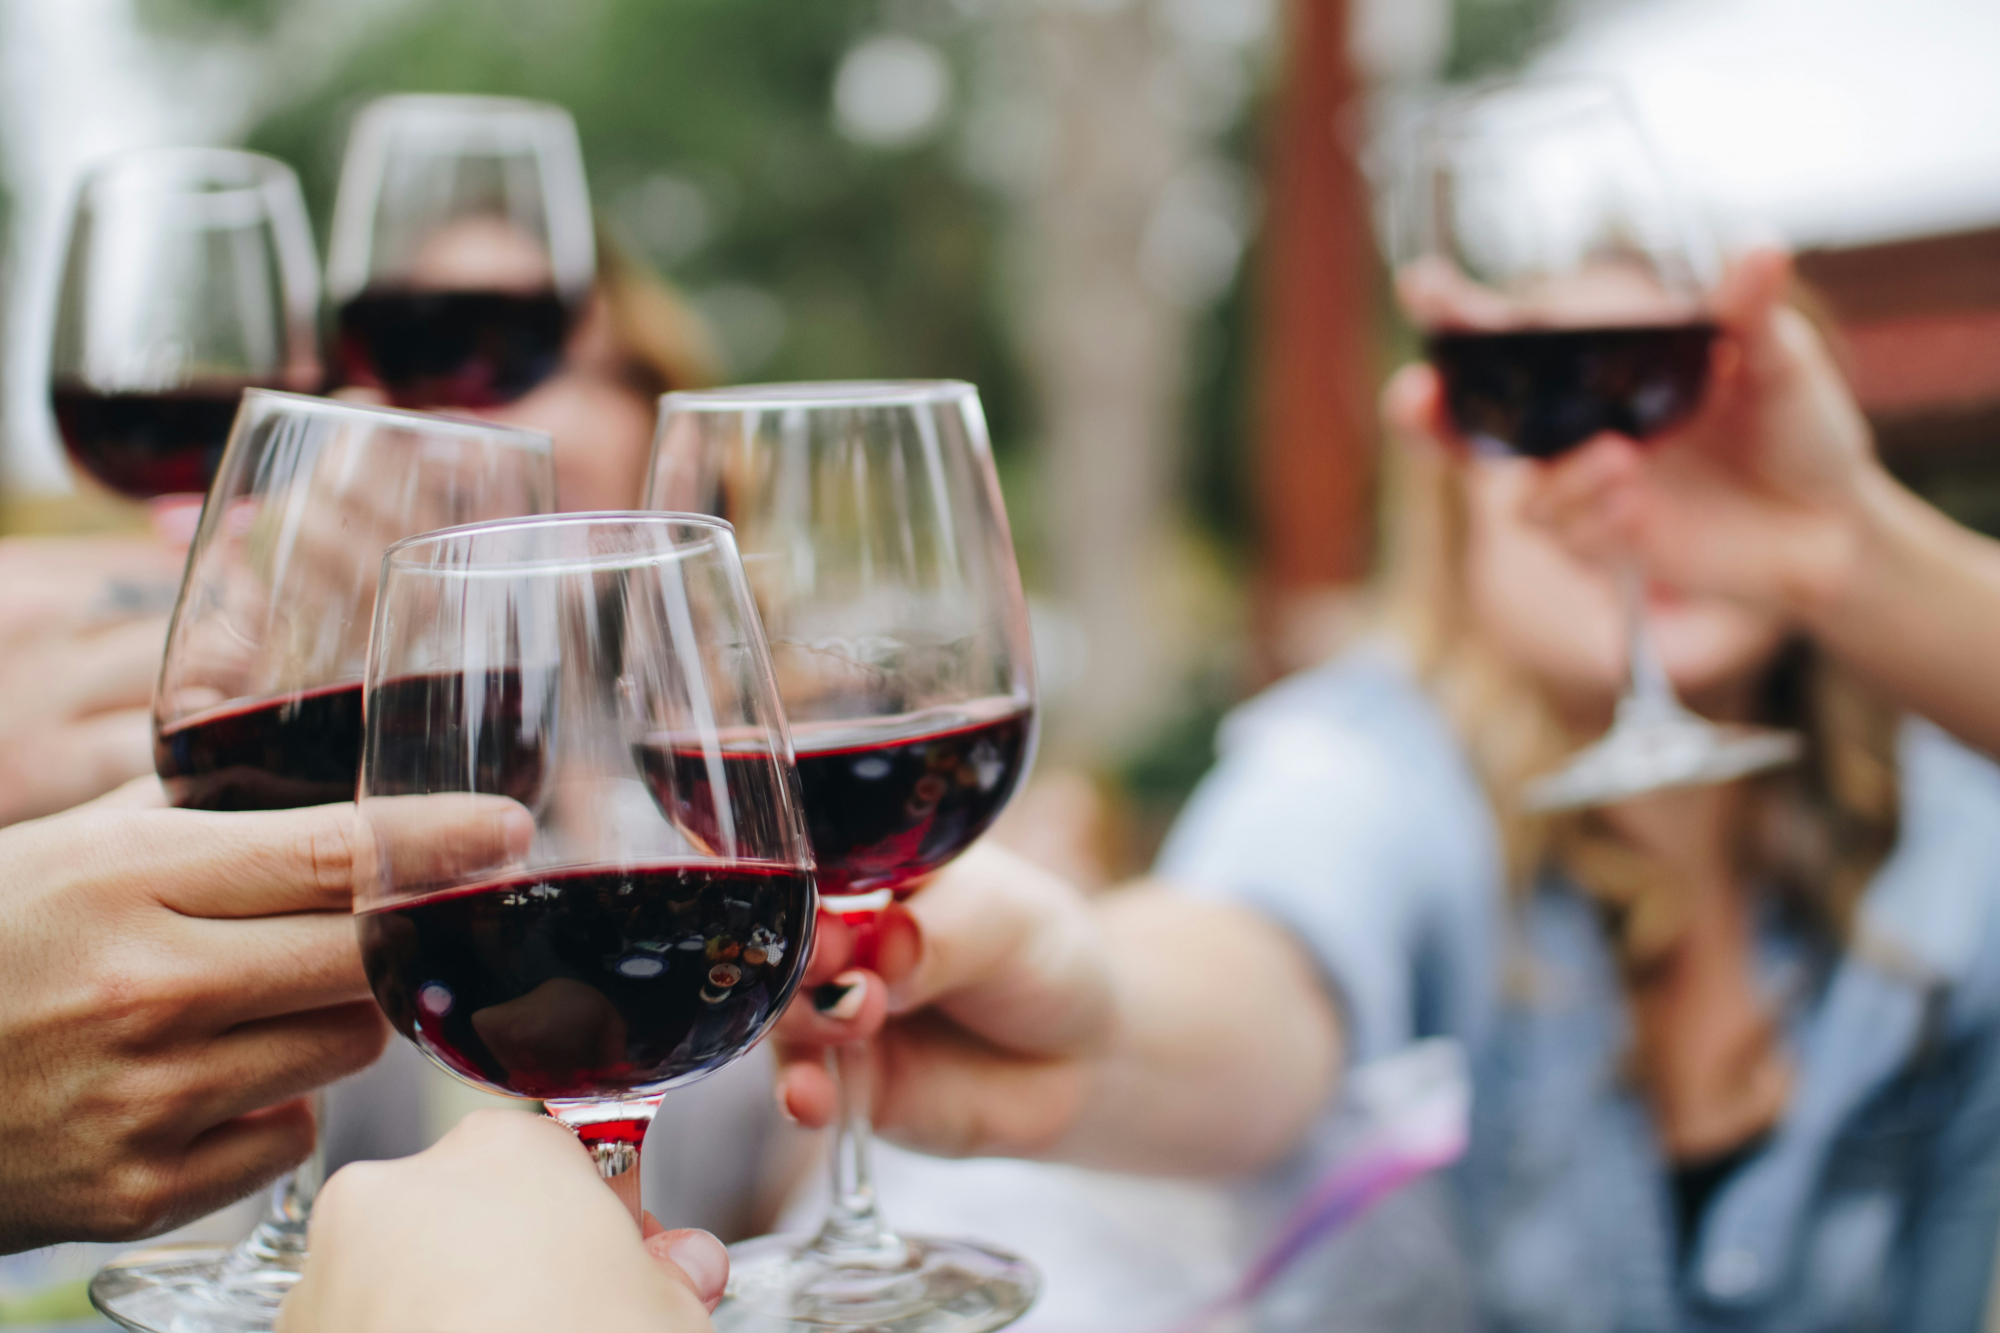 découvrez les meilleures associations de vins avec nos conseils en matière d'accords mets et vins pour optimiser vos dégustations. trouvez la combinaison parfaite avec notre guide de wine pairing.